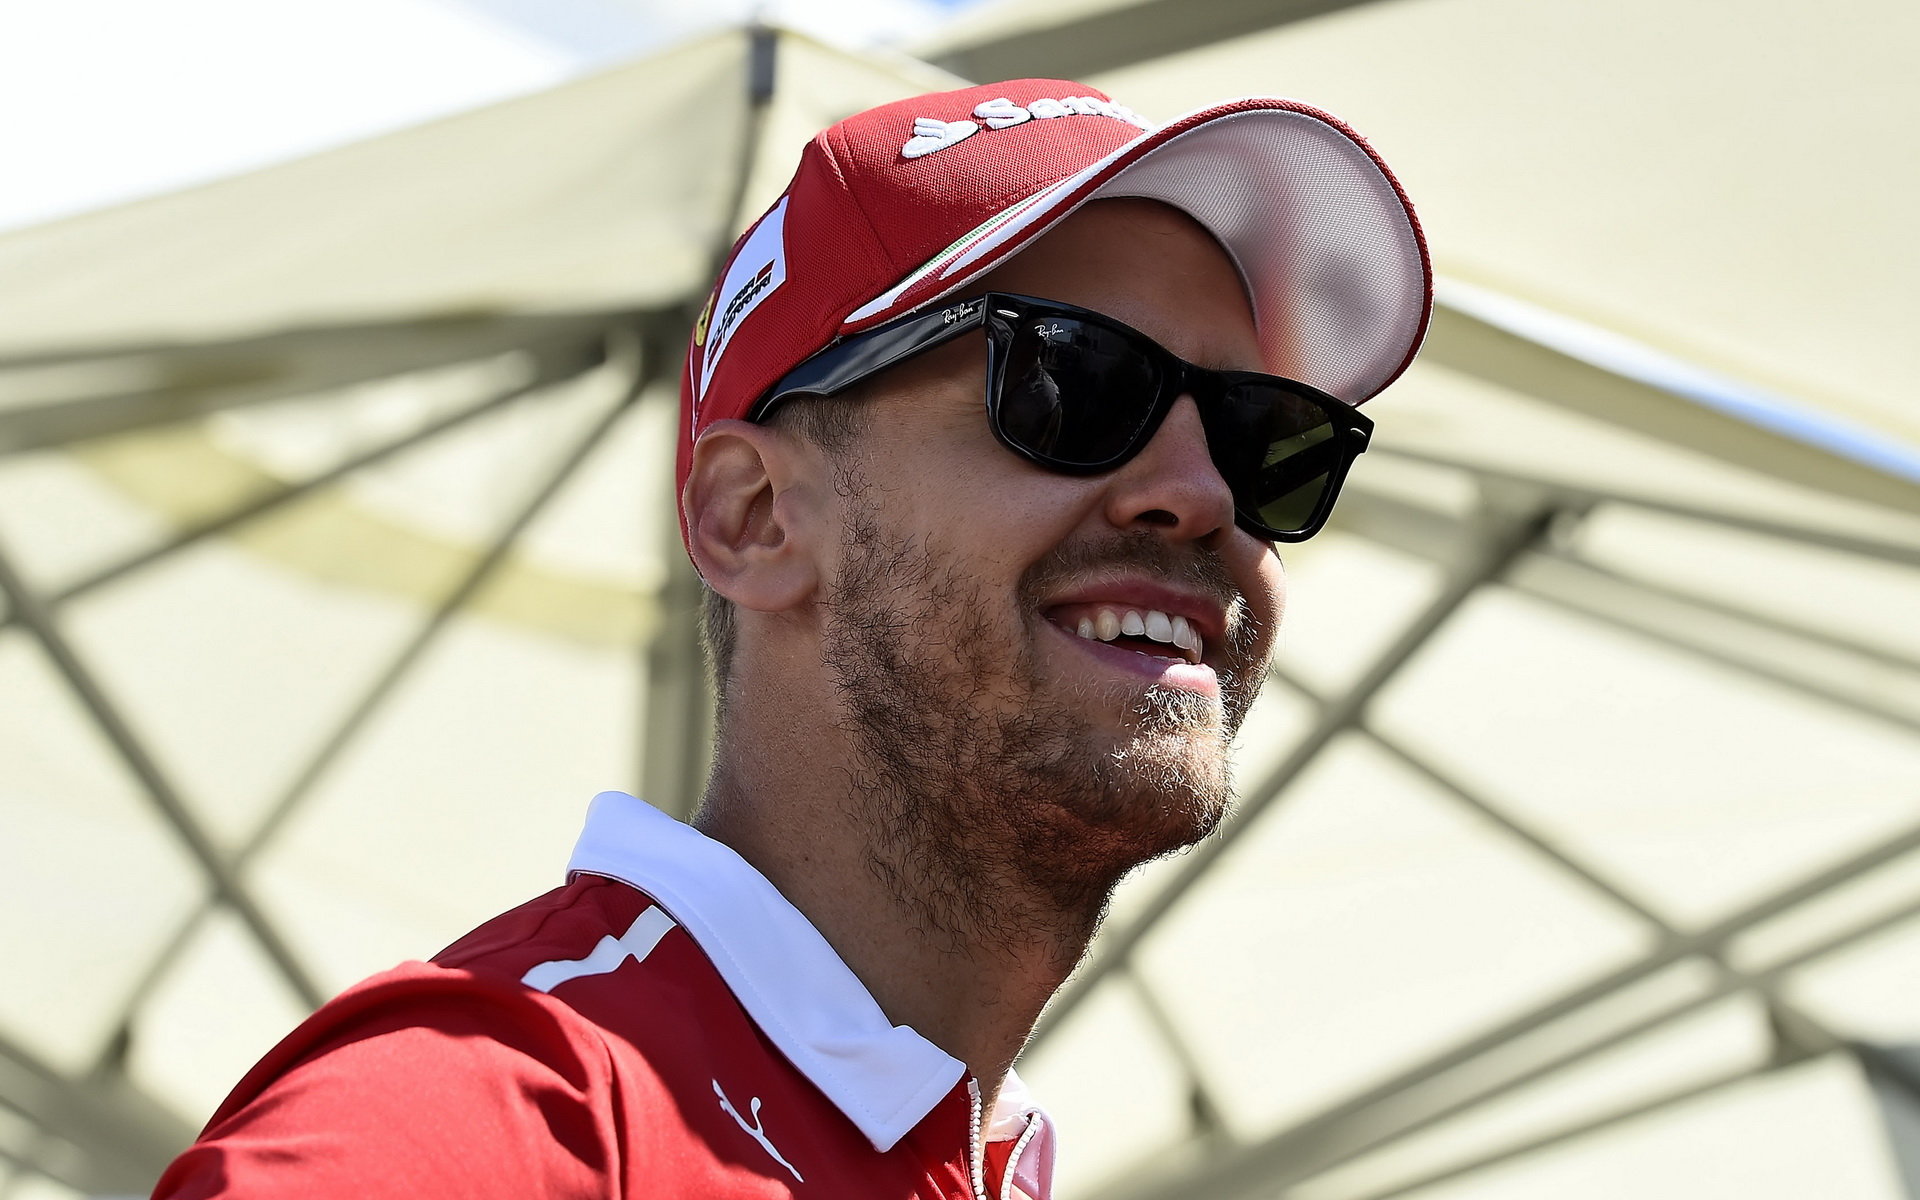 Sebastian Vettel v Kanadě